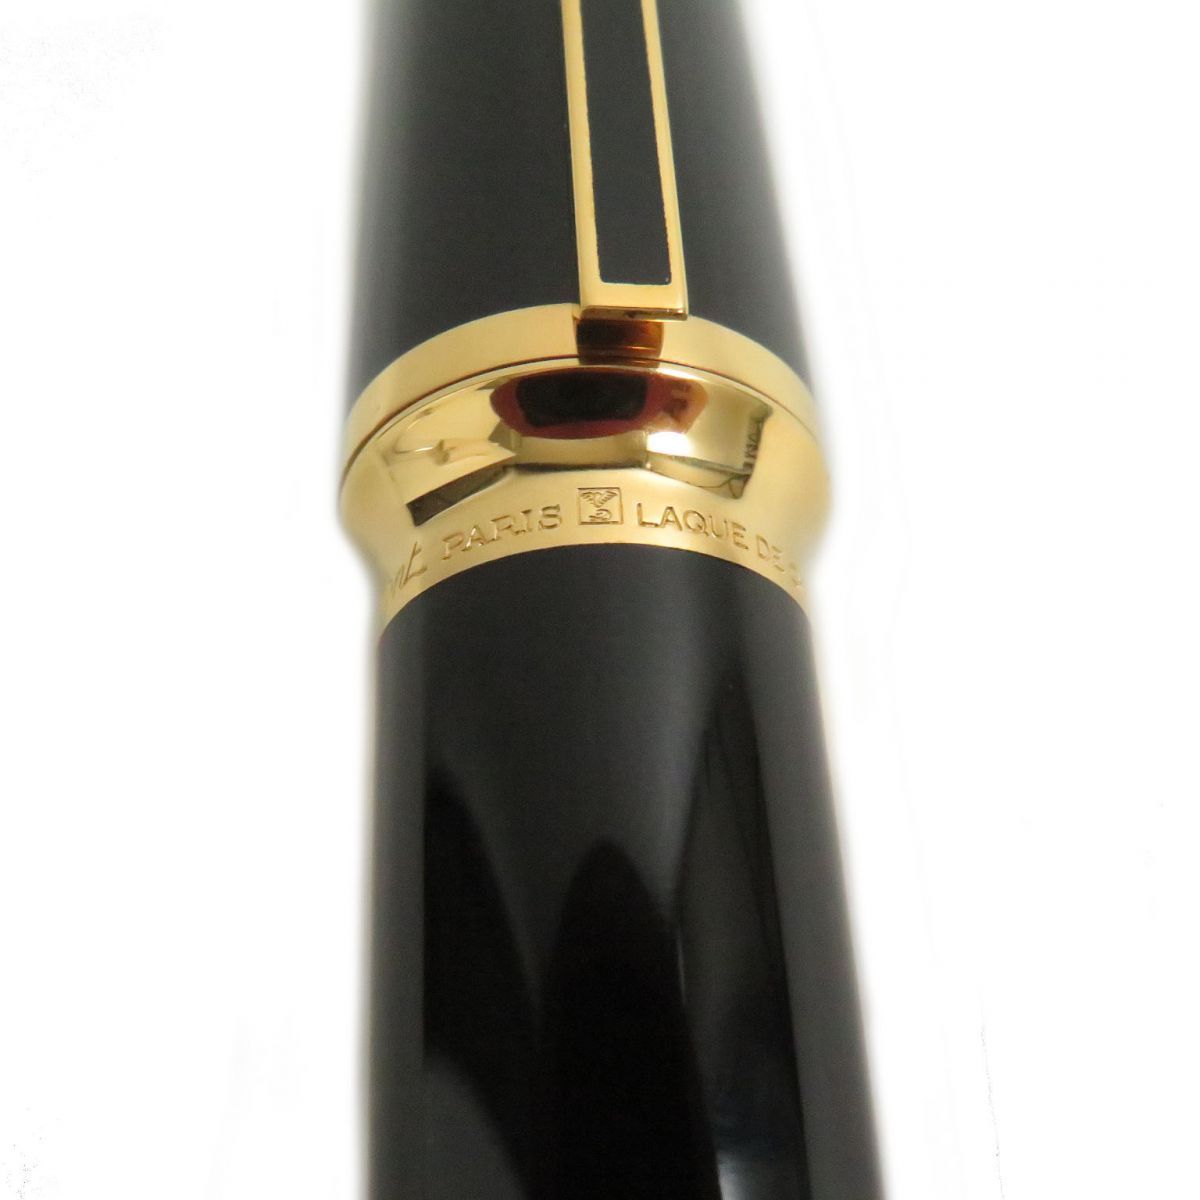 極美品□S.T.Dupont/エステーデュポン モンパルナス ラッカー ペン先18ct Mニブ 万年筆 ブラック×ゴールド フランス製 メンズ/レディース